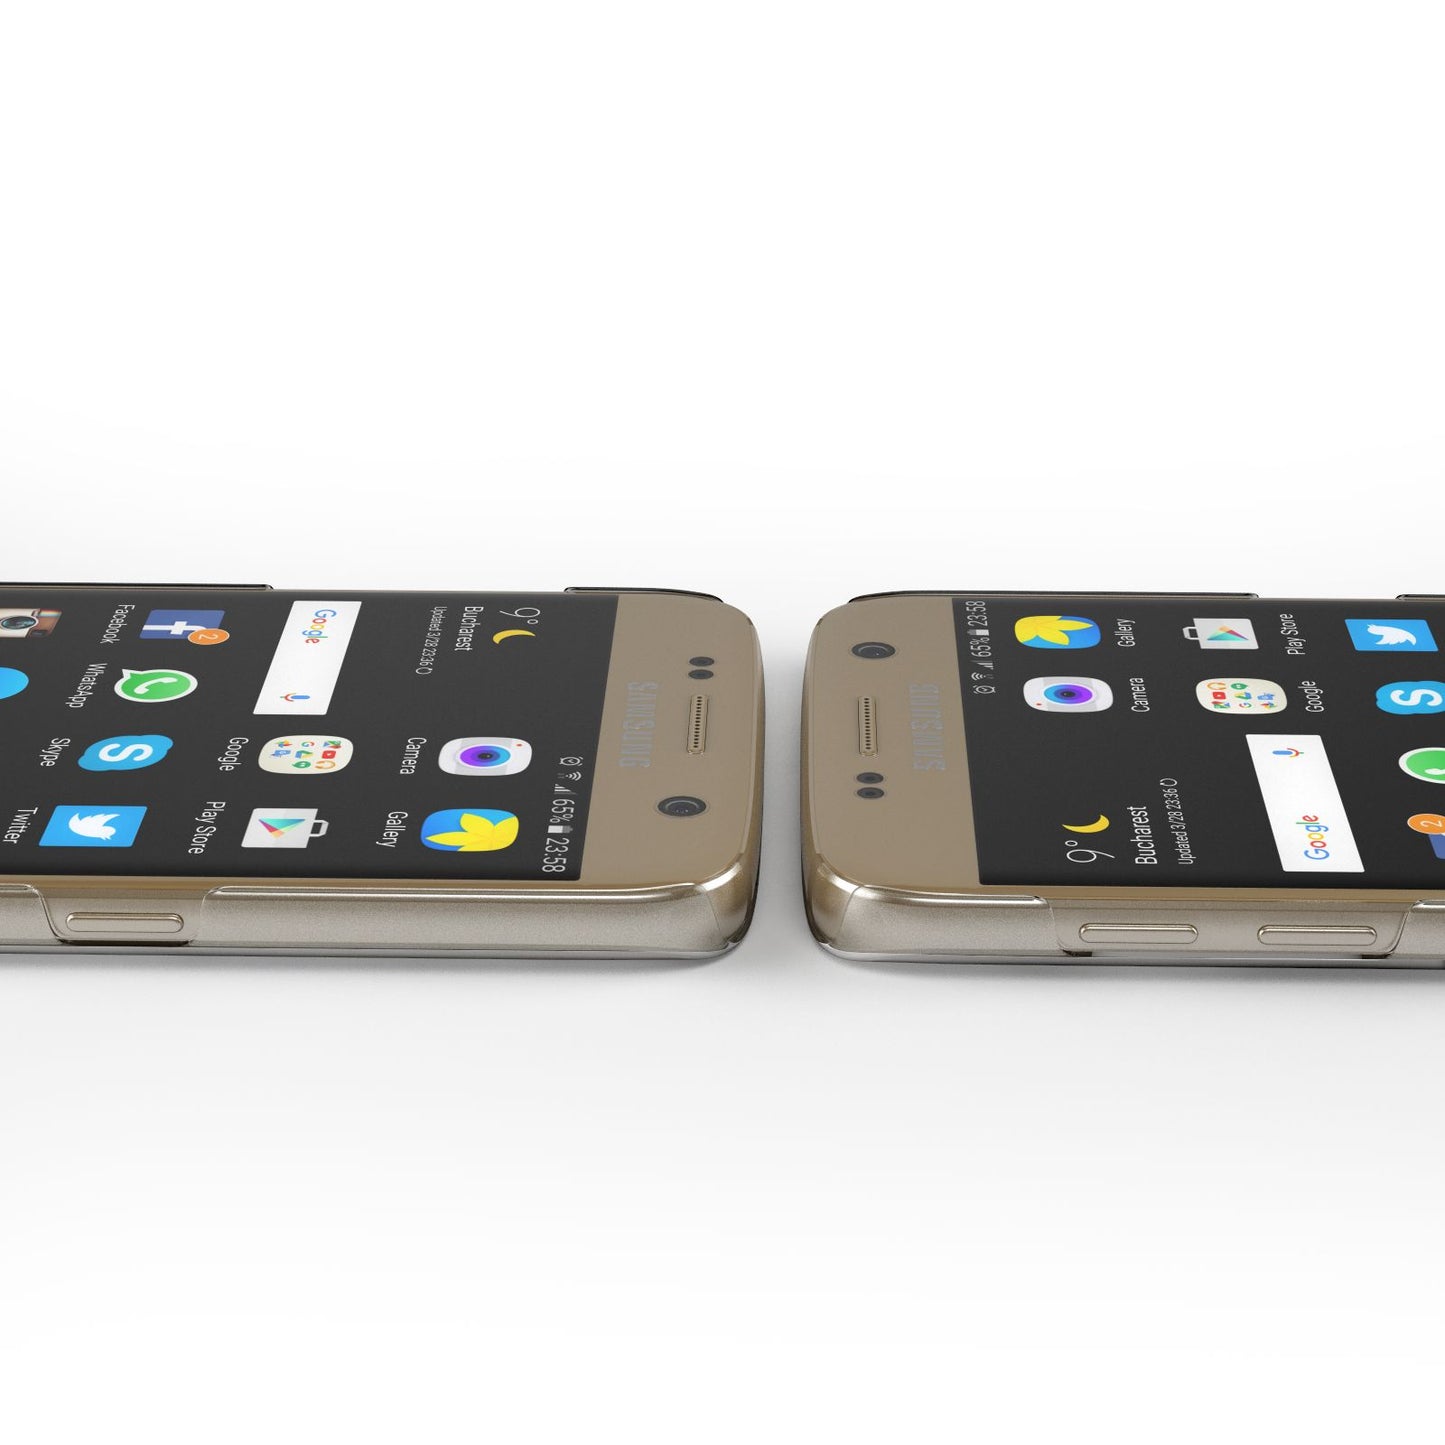 Custom Dachshund Samsung Galaxy Case Ports Cutout